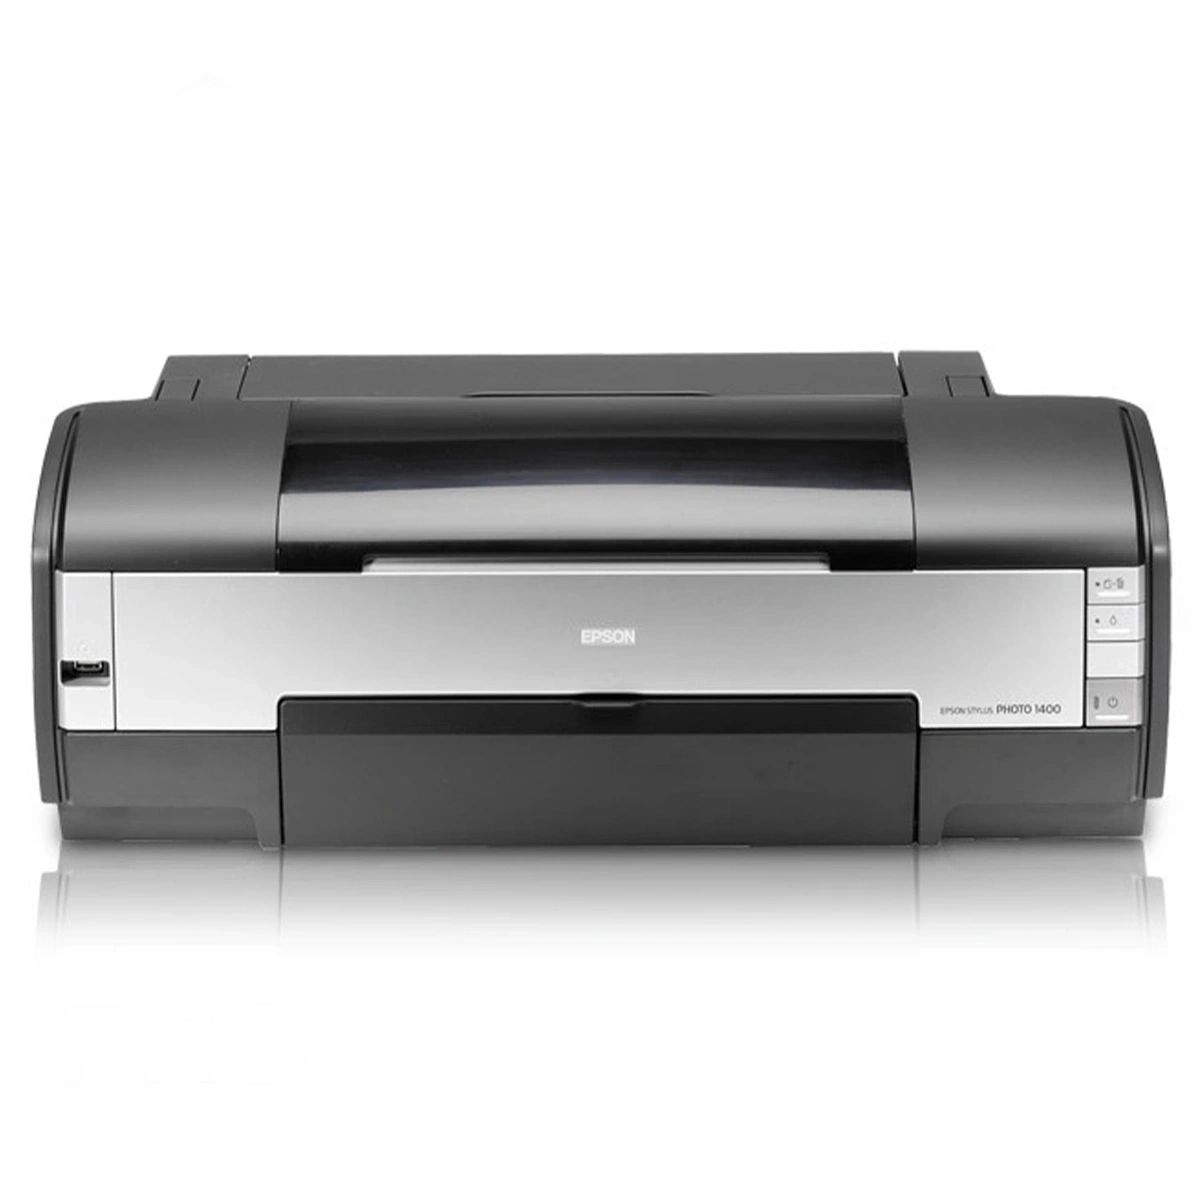 Epson Stylus Photo 1400 Printer Straight View